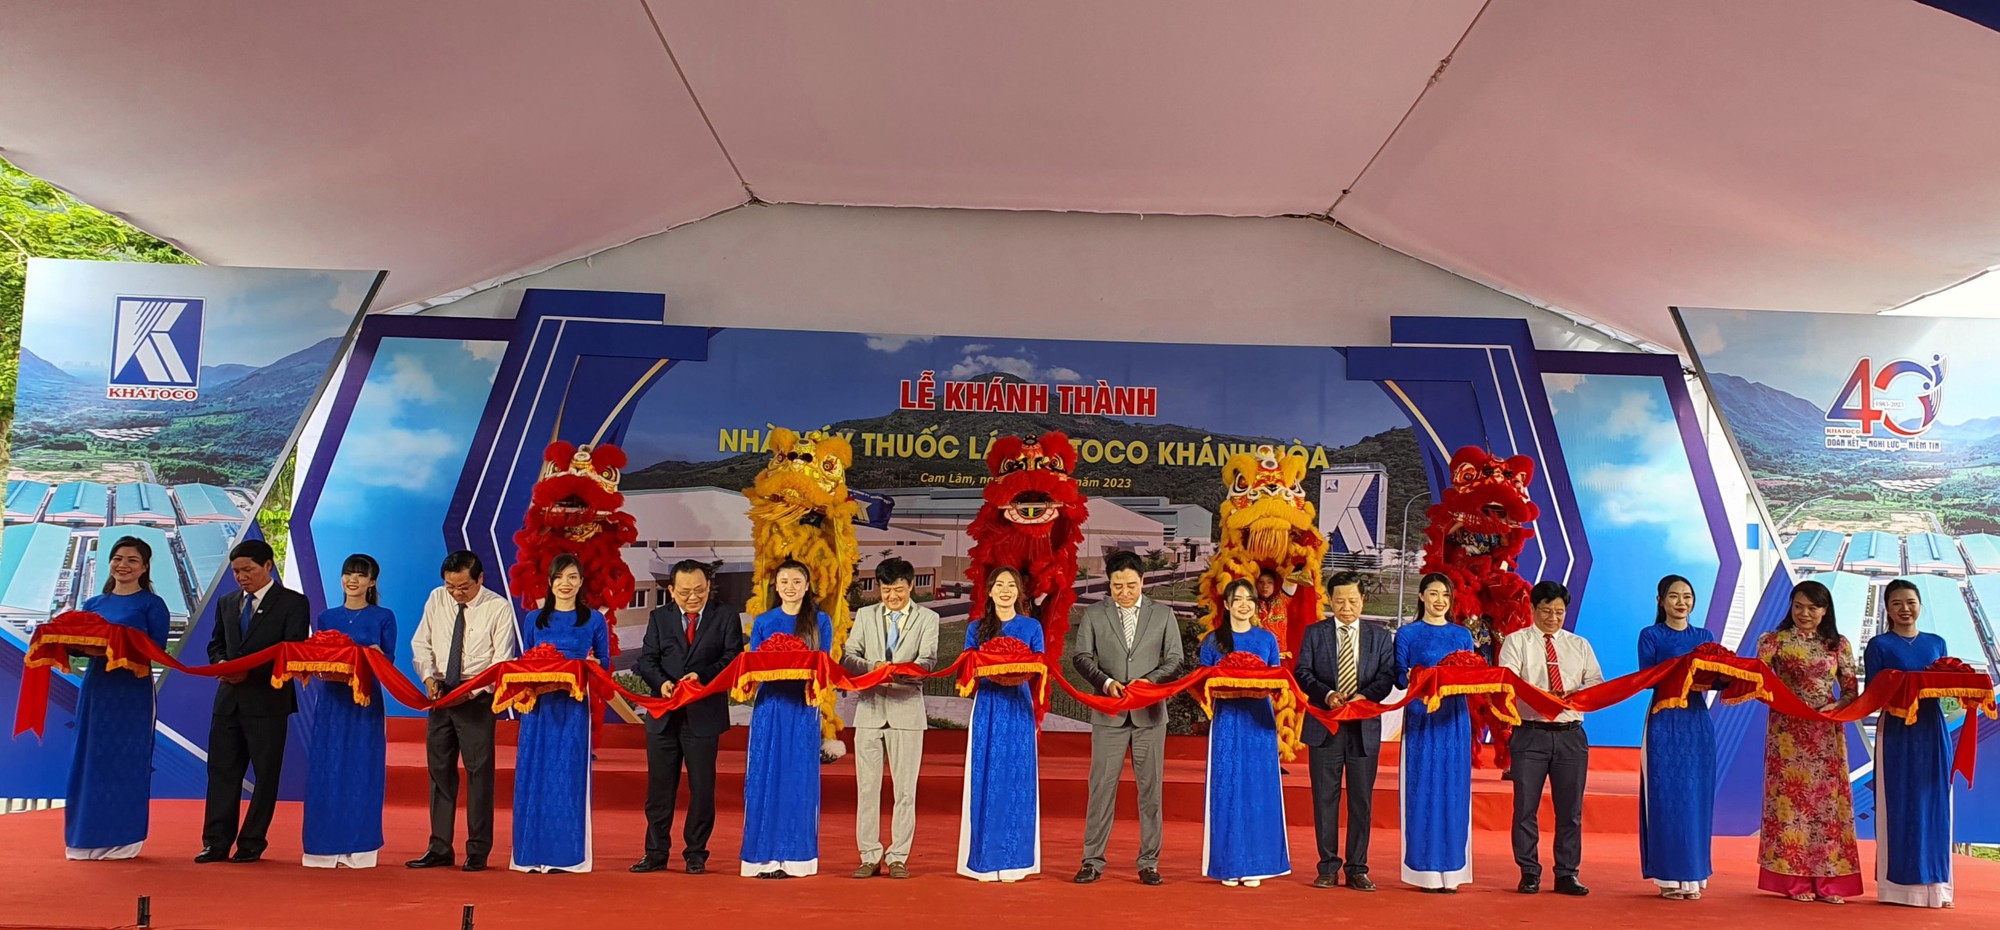 Tổng Công ty Khánh Việt: Doanh thu hợp nhất đạt 8.200 tỷ đồng - Ảnh 1.